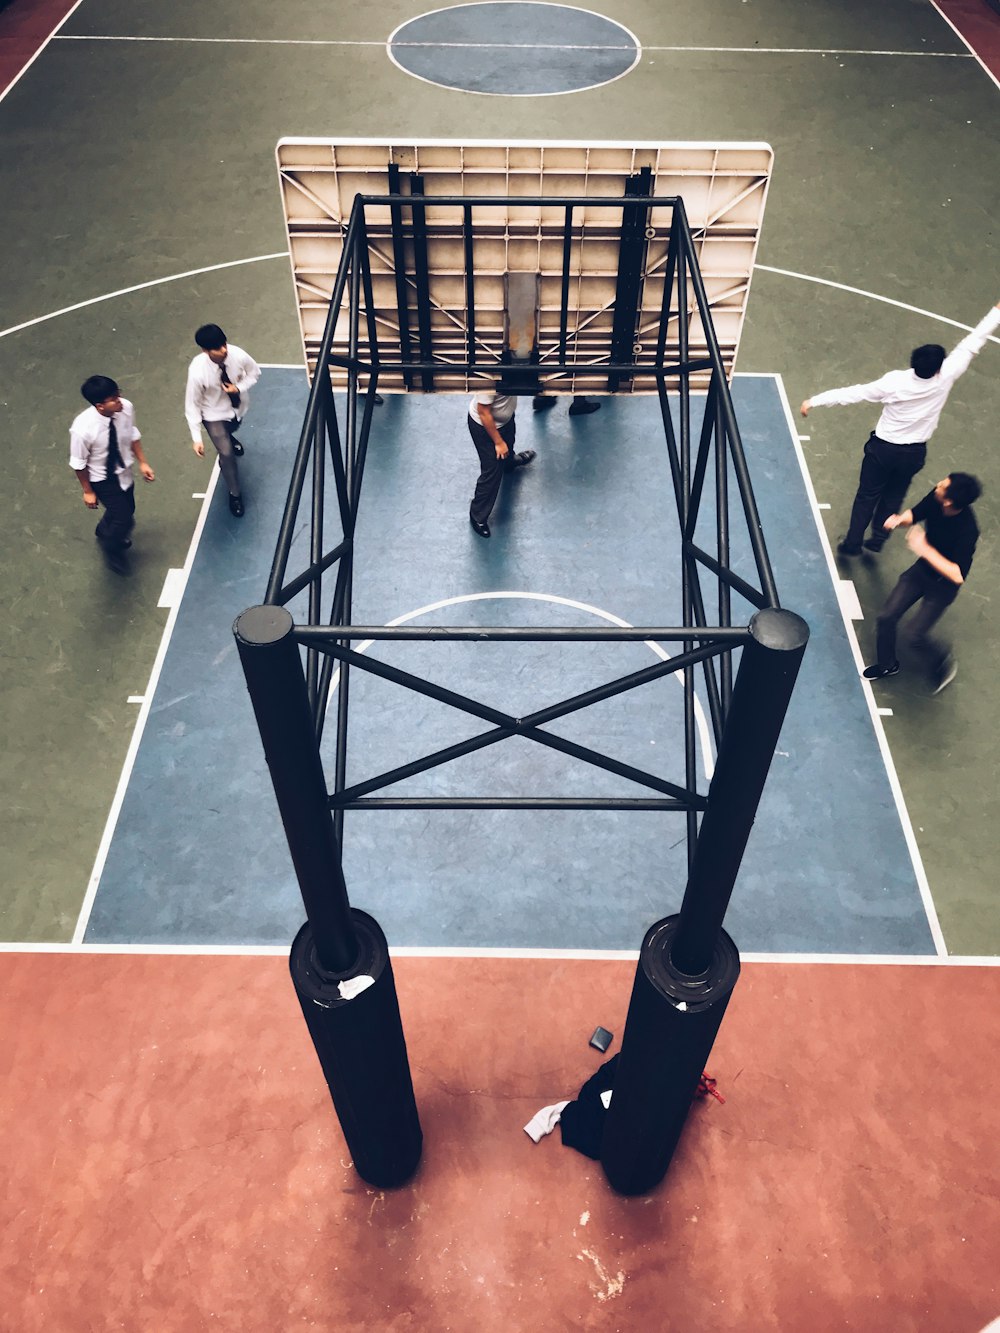 people standing under basketball hoop